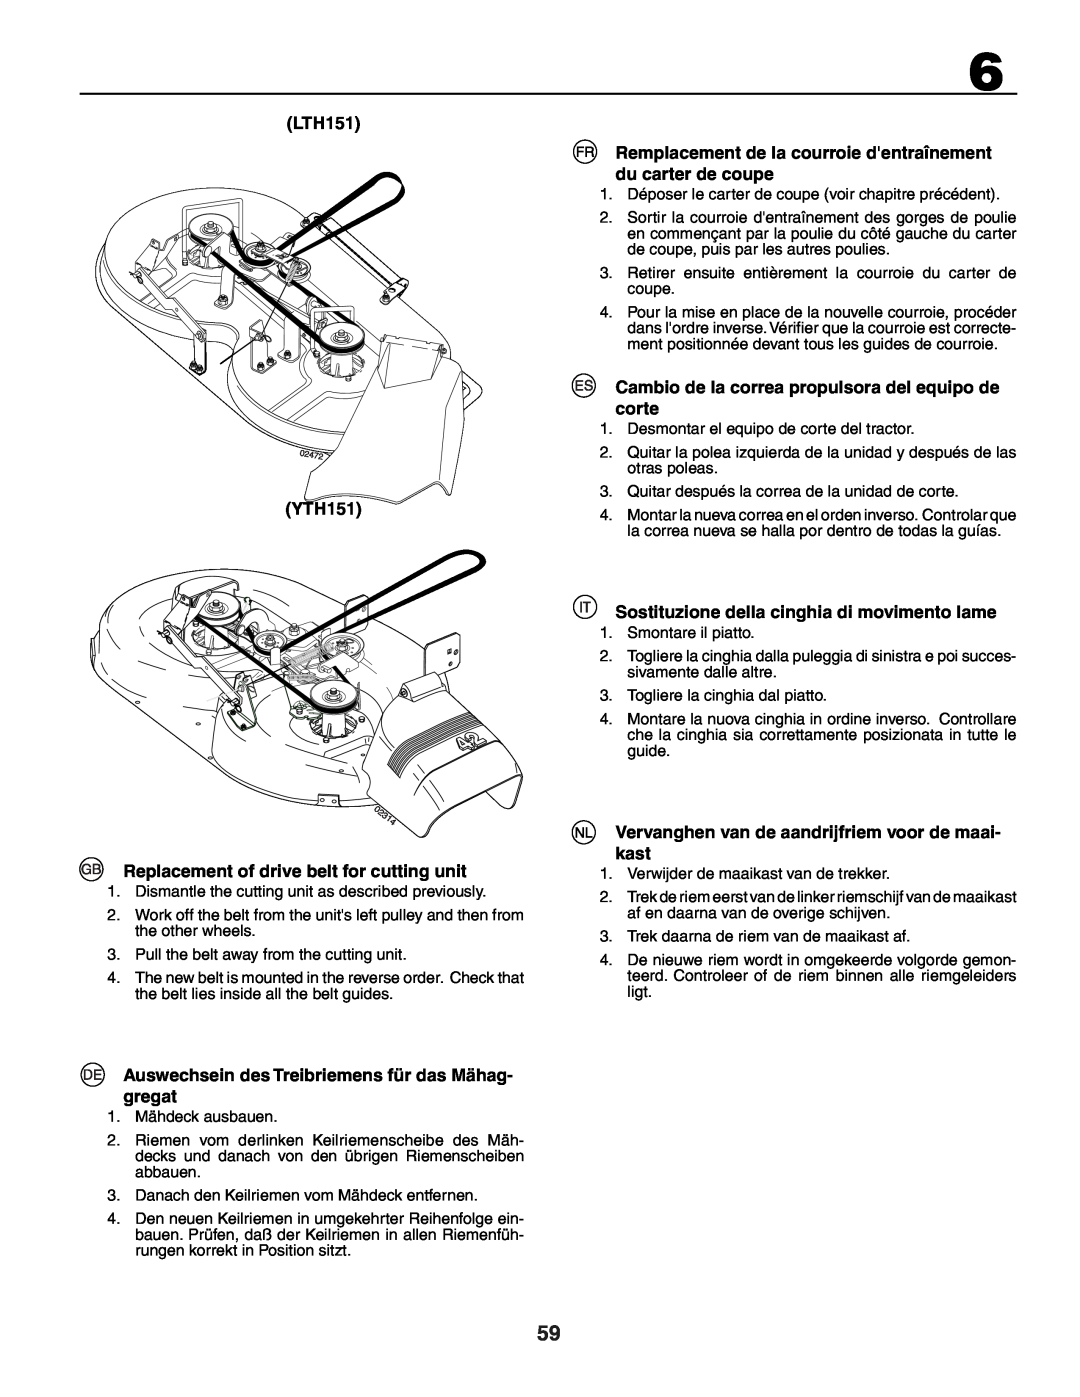 Husqvarna YTH151 LTH151, Replacement of drive belt for cutting unit, Auswechsein des Treibriemens für das Mähag- gregat 